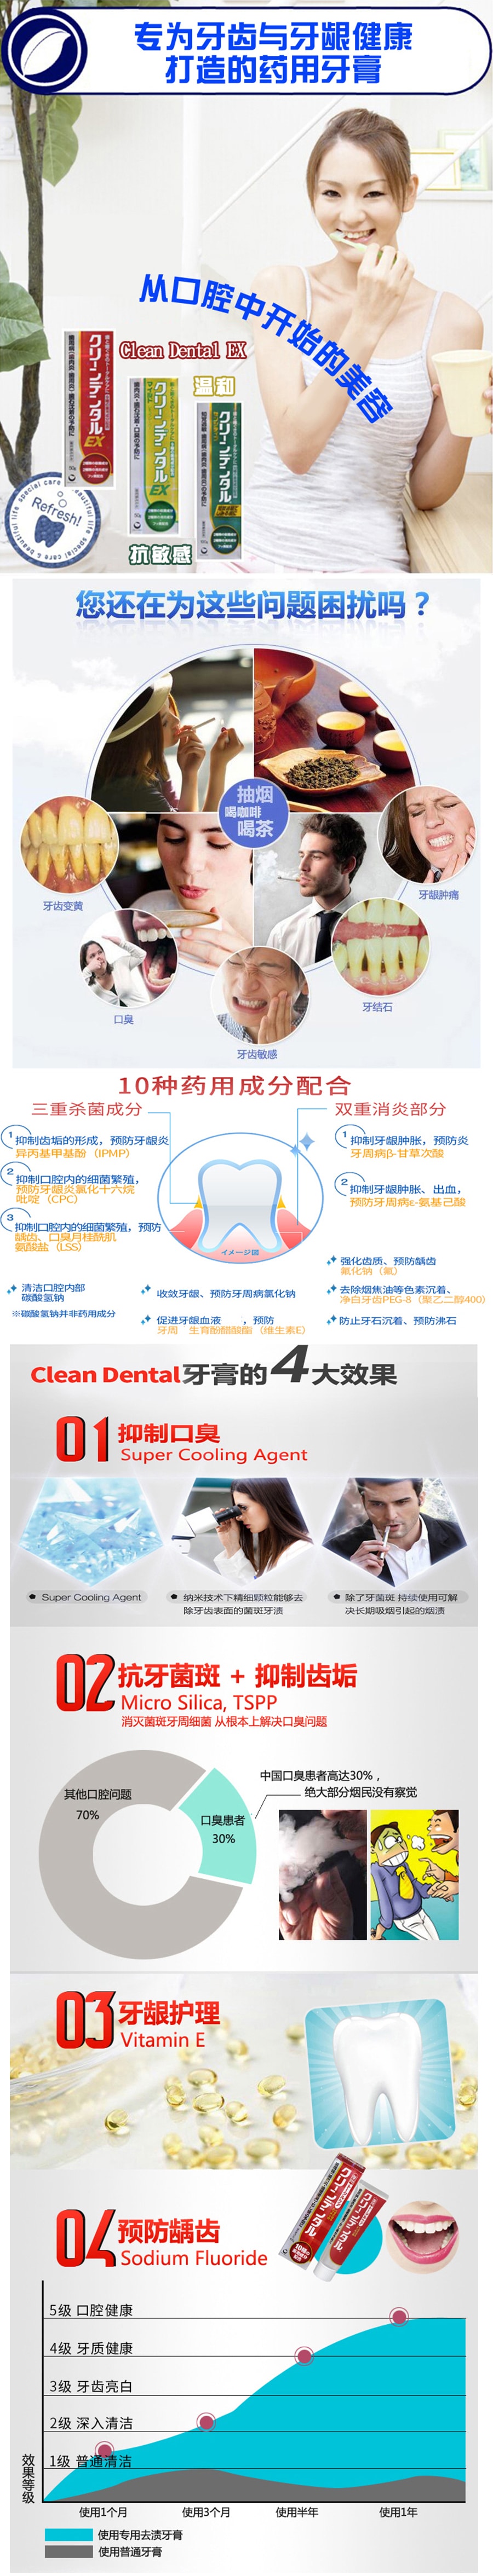 【日本直邮】第一三共 牙膏 红色预防牙周病 防虫牙100g